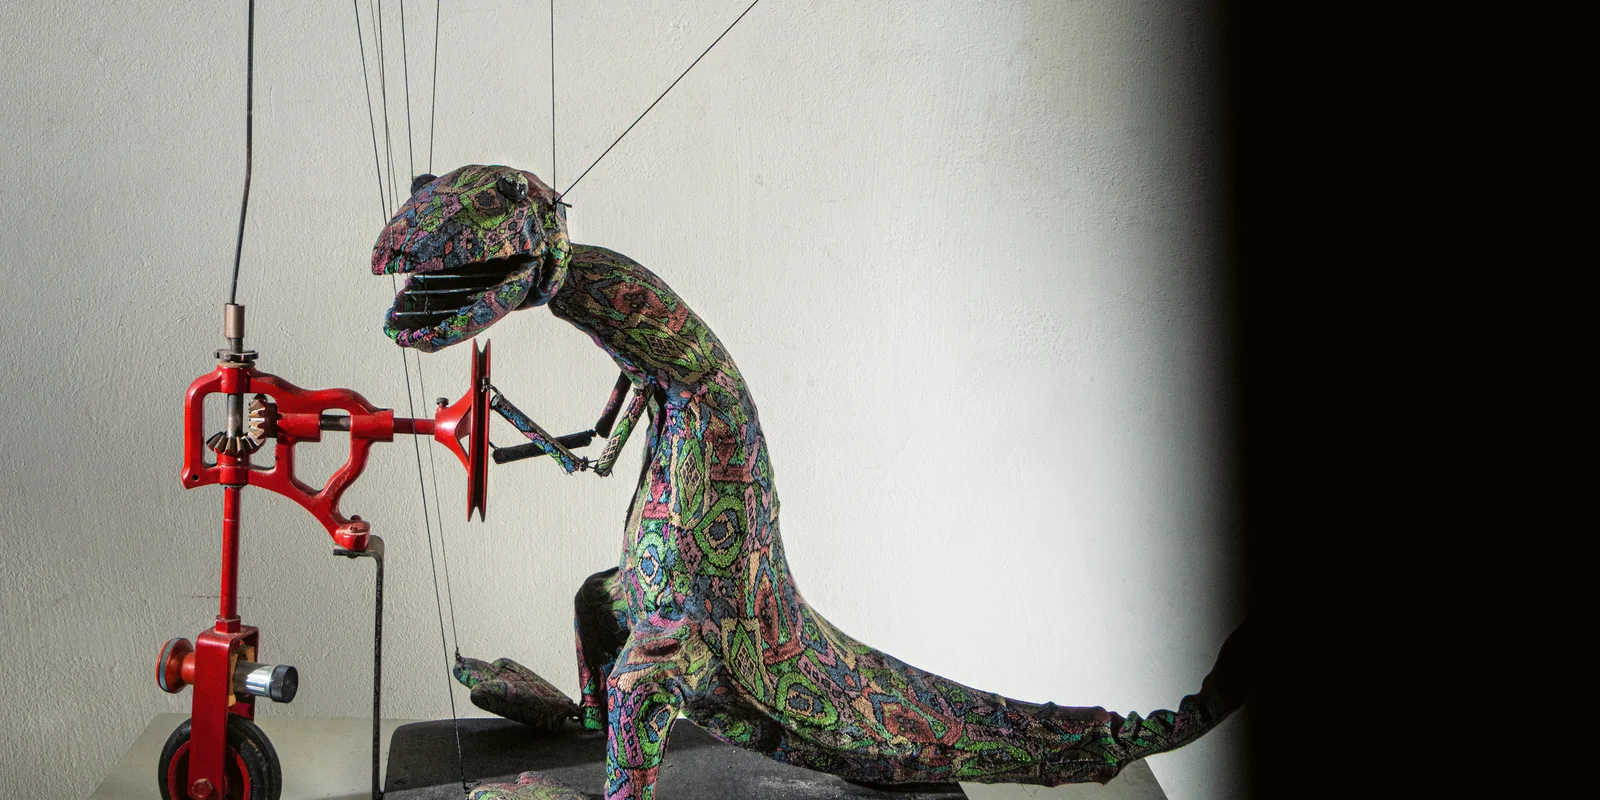 Eine Dinosauriermarionette auf einem Tretroller